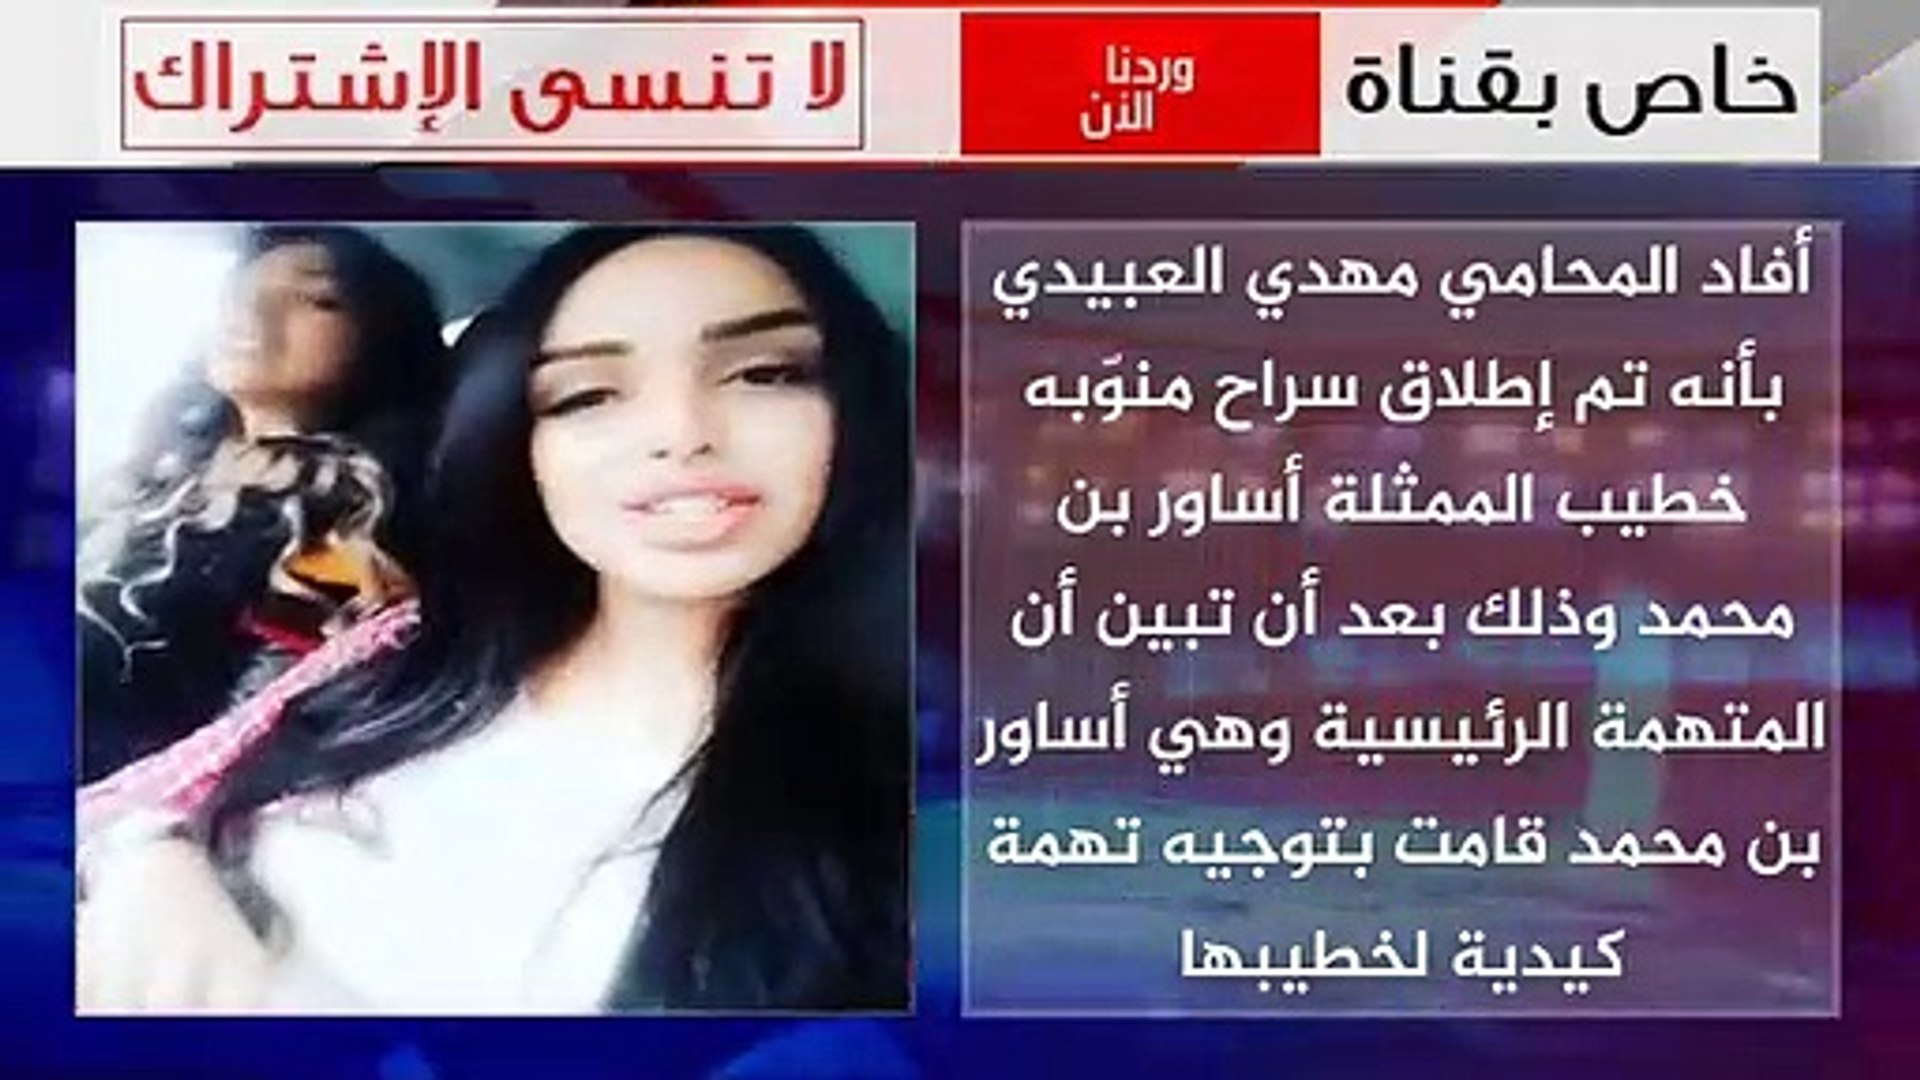 فضيحة - كاميرا المراقبة تفضح ما كانت تفعله الممثلة التونسية أساور بن محمد  مع الشاب حلبودة داخل منزلها - فيديو Dailymotion